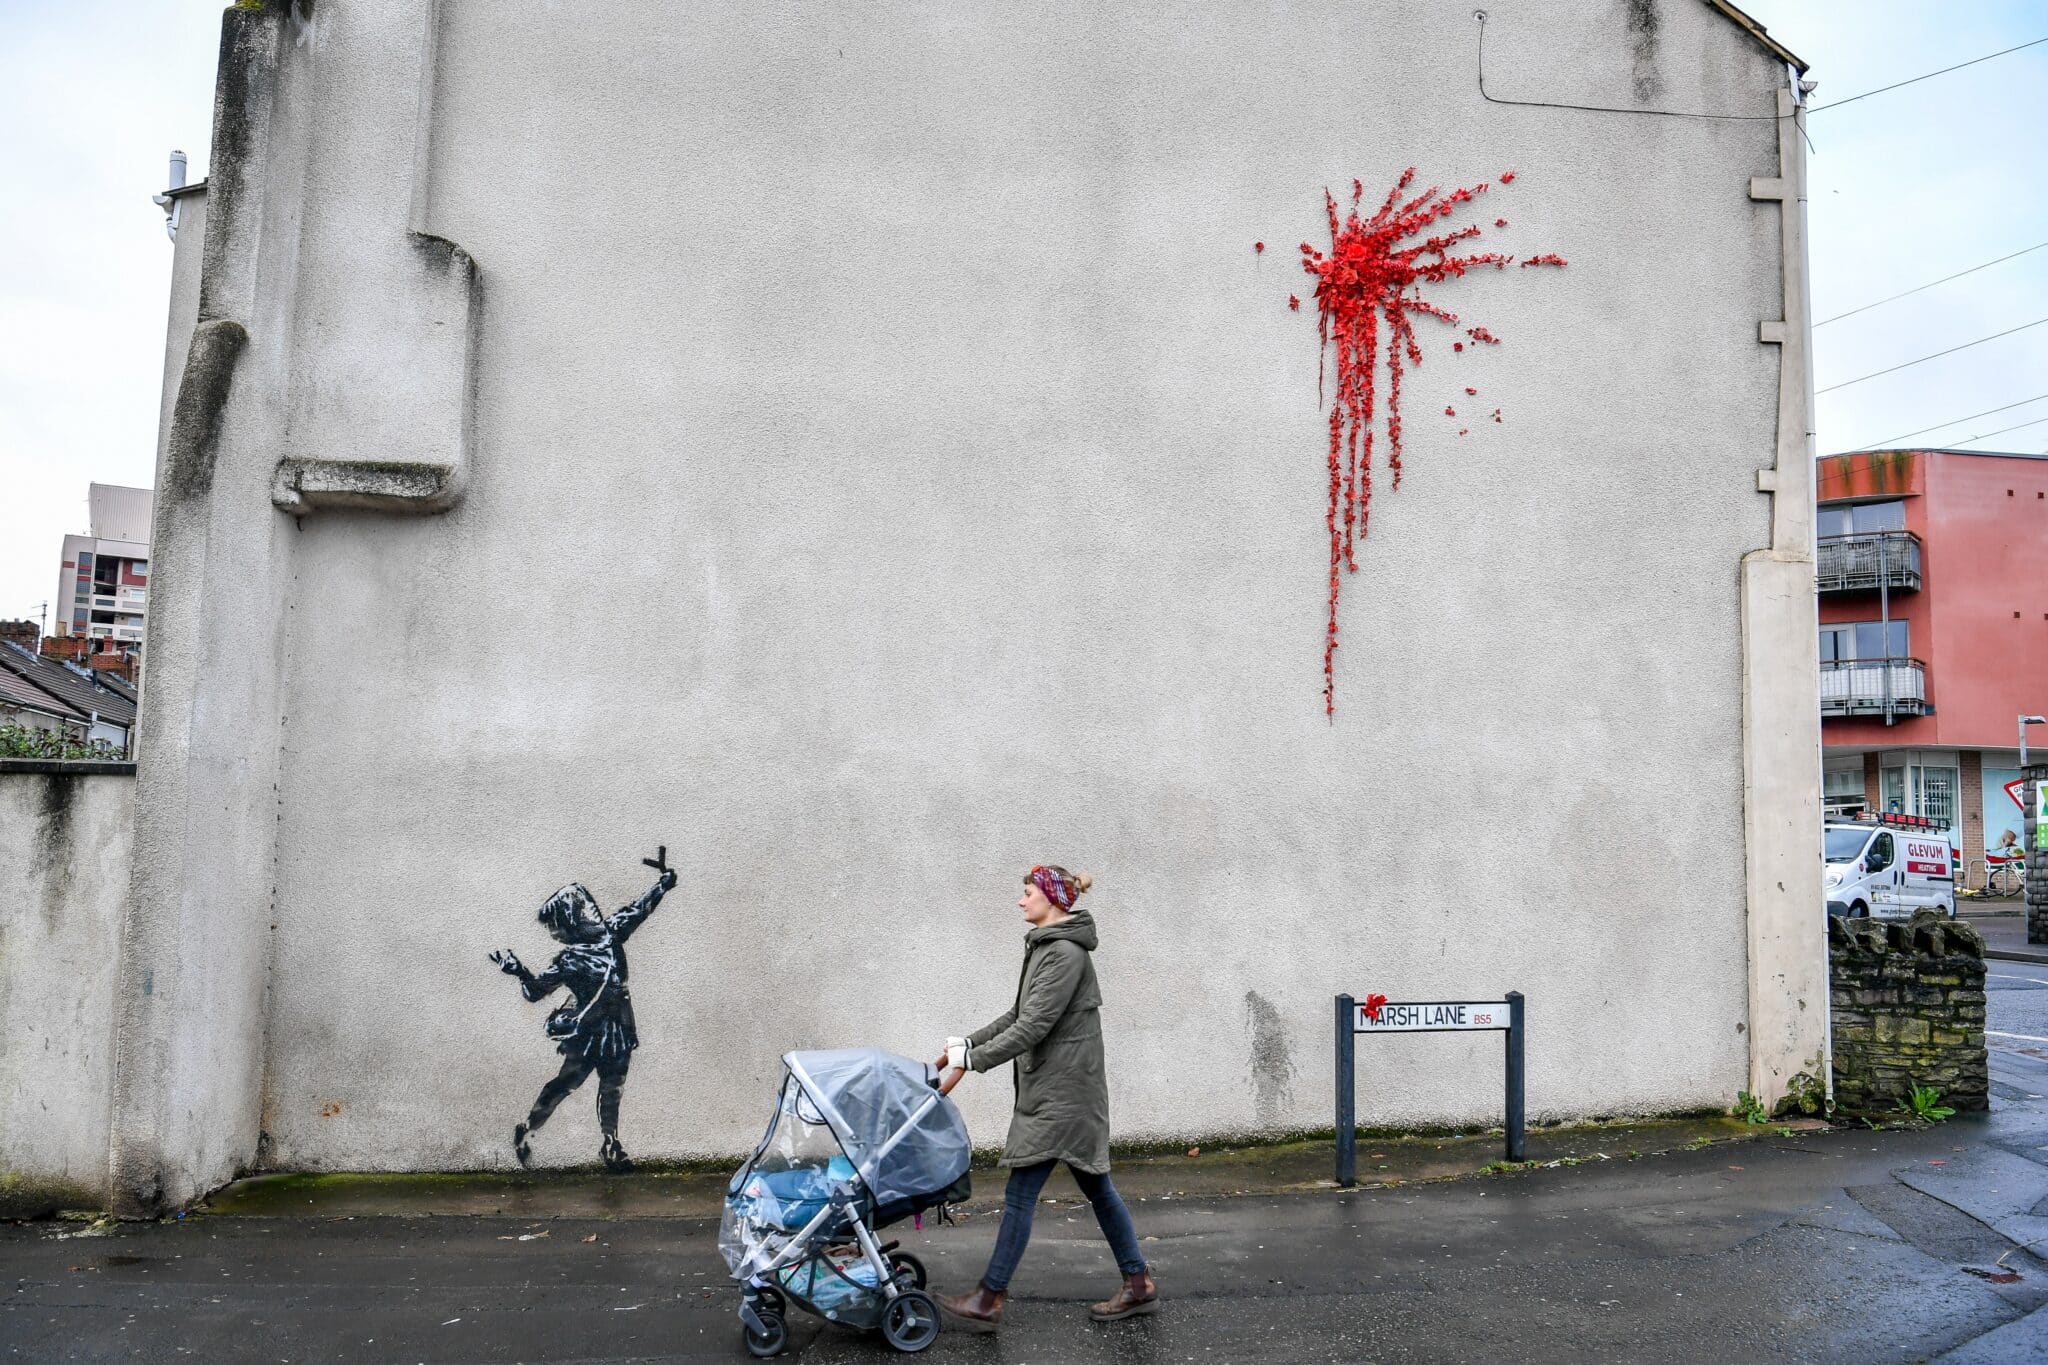 Obra de Banksy aparecida en Bristol (Inglaterra)